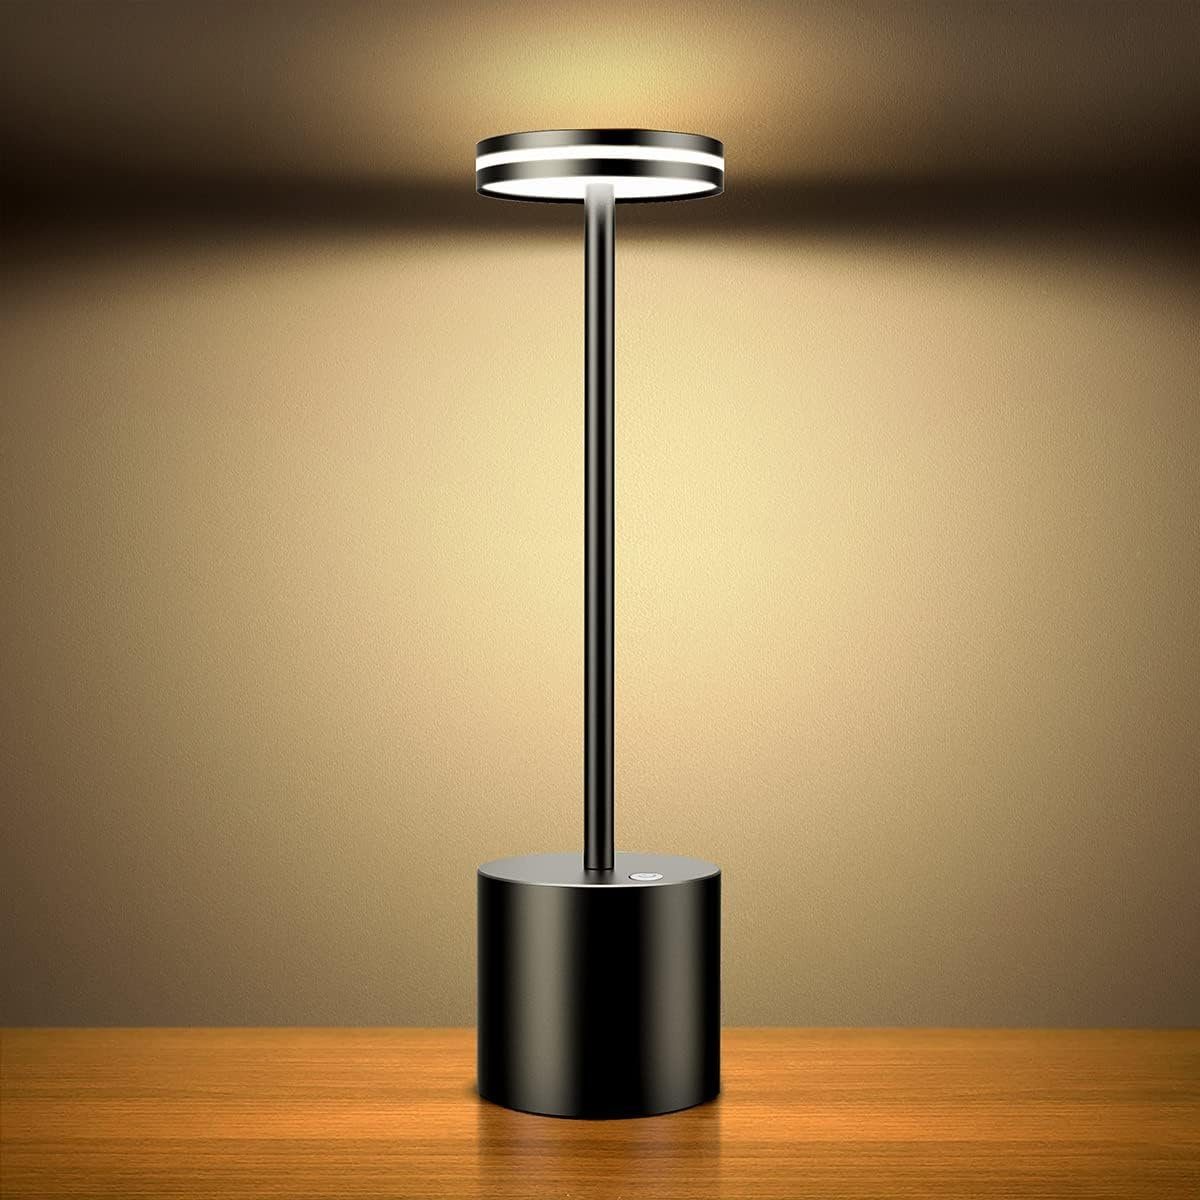 Bedee Tischleuchte LED Tischlampe Kabellos Akku 5000mAh Tischleuchte Dimmbar Schwarz, Warmweiß, 3 Farbtemperatur, für Outdoor Nachttisch Esstisch Schreibtisch